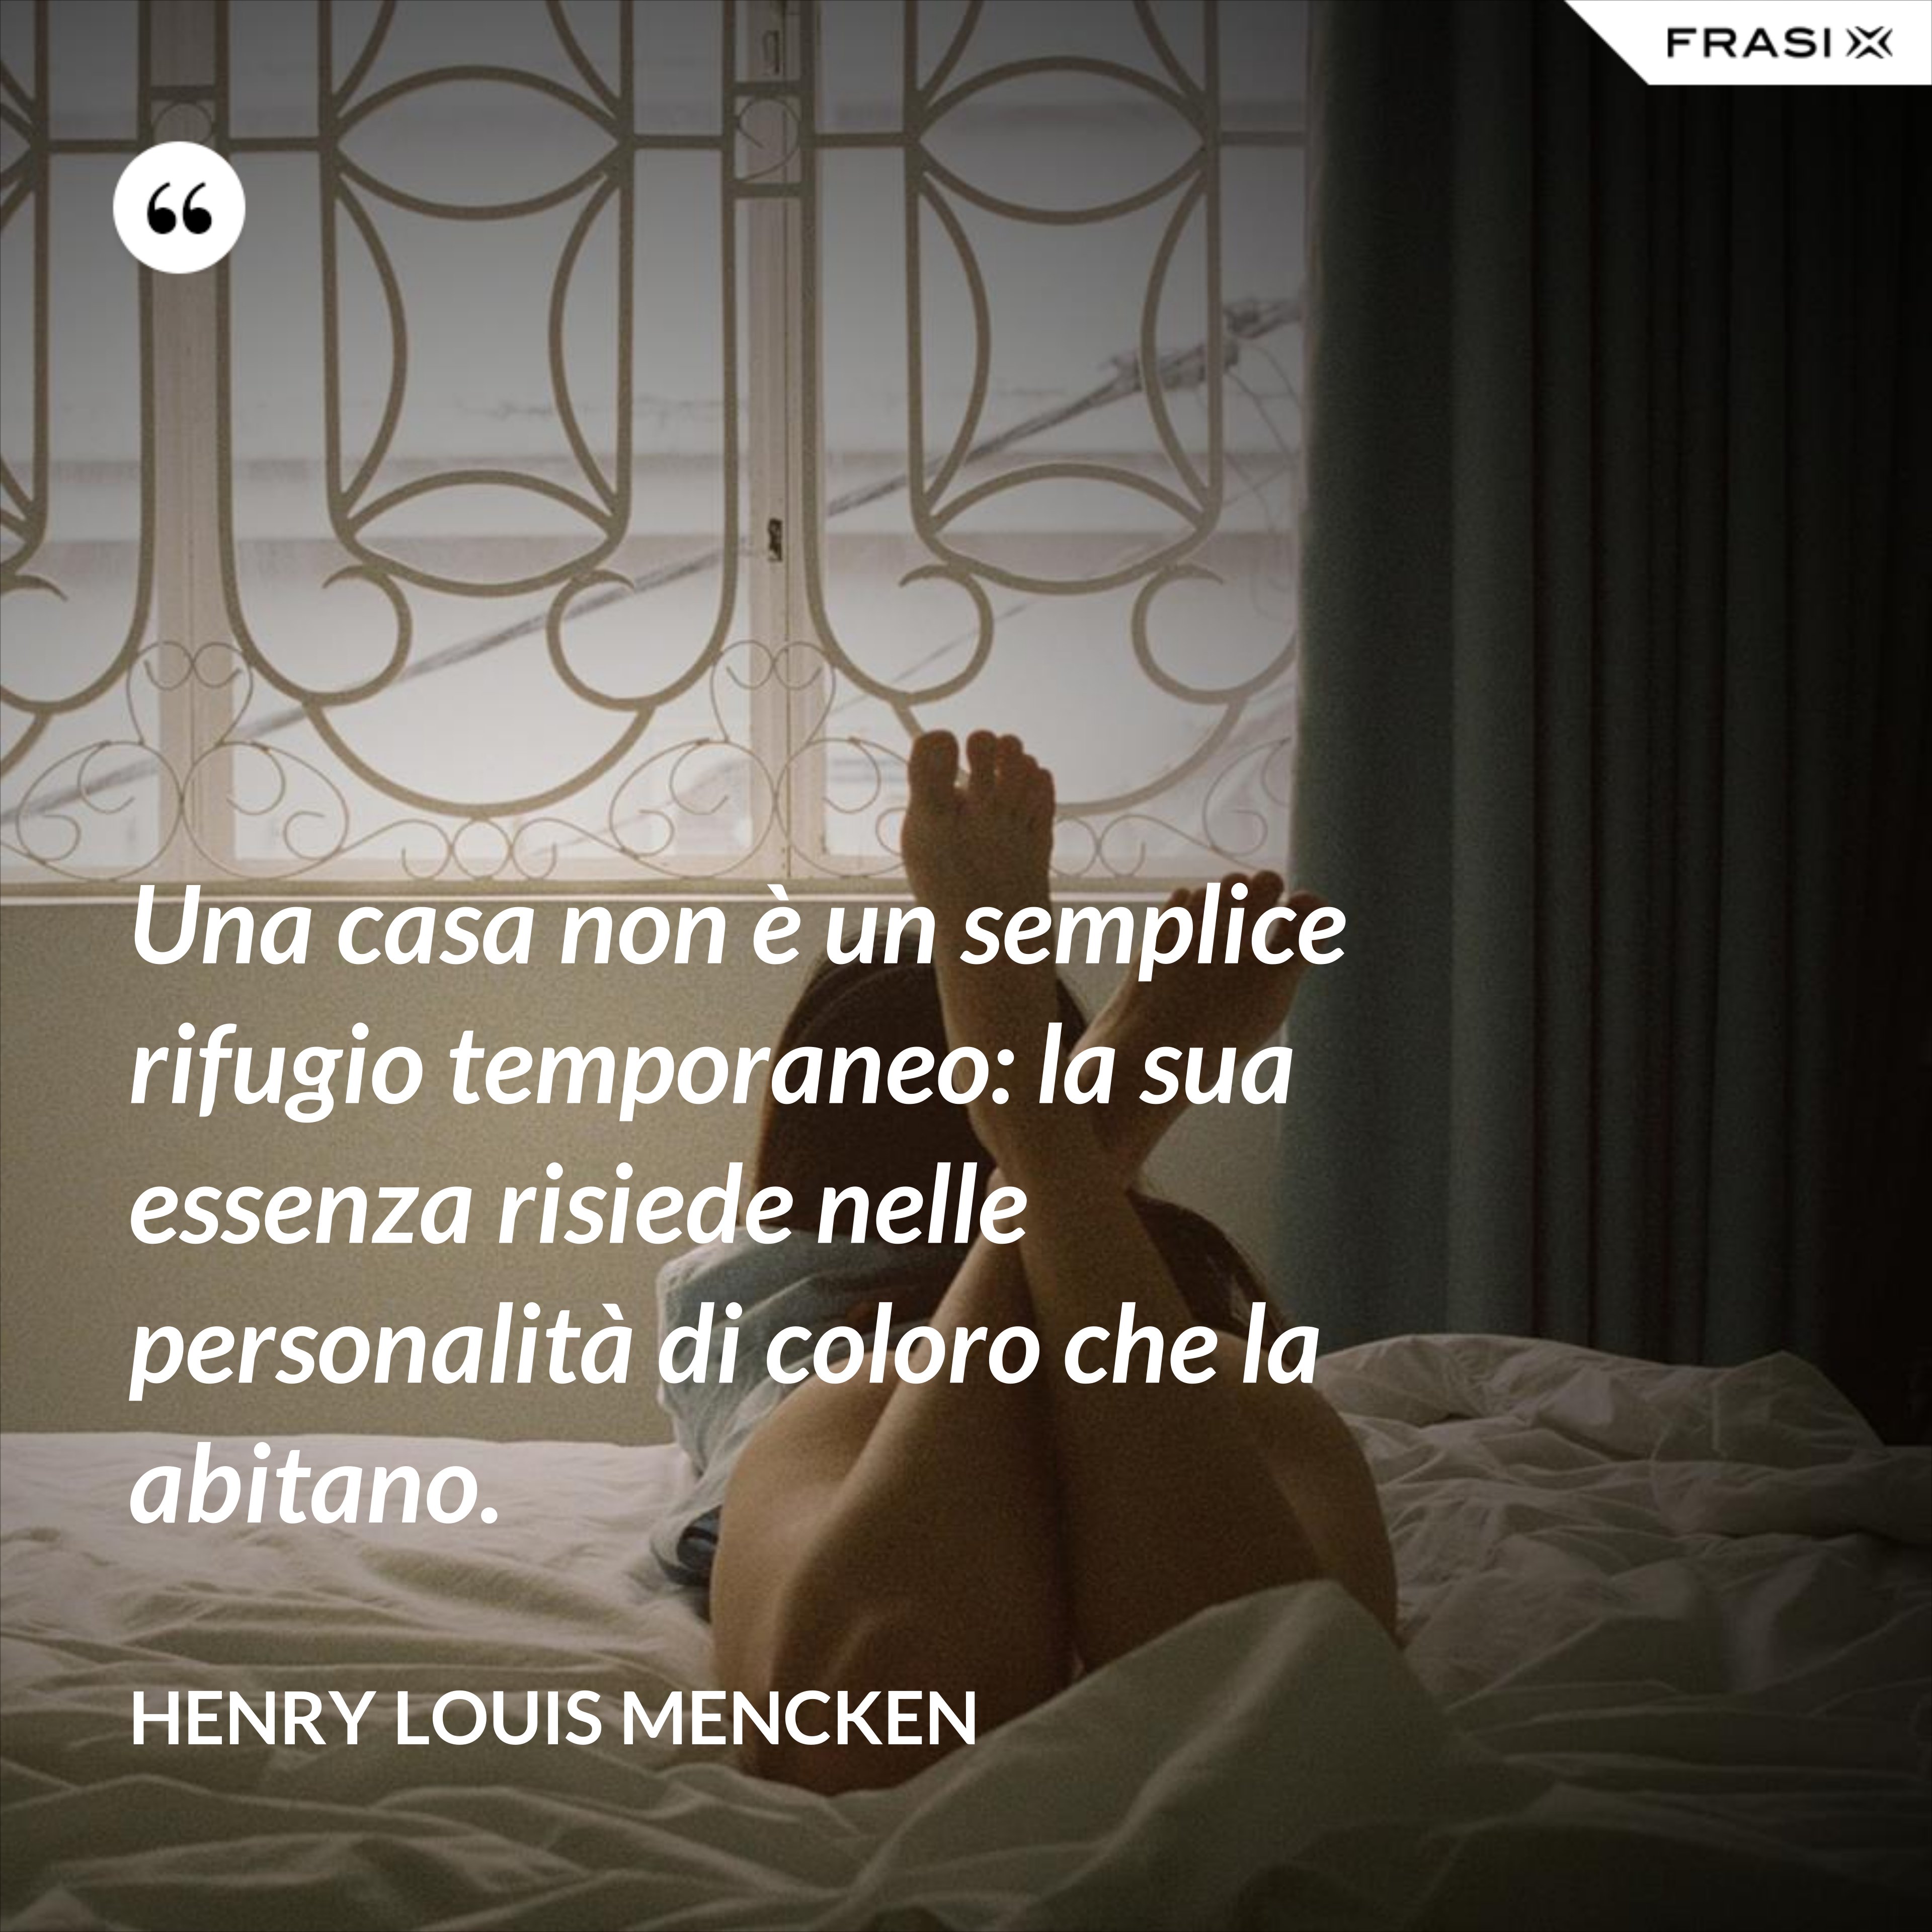 Una casa non è un semplice rifugio temporaneo: la sua essenza risiede nelle personalità di coloro che la abitano. - Henry Louis Mencken